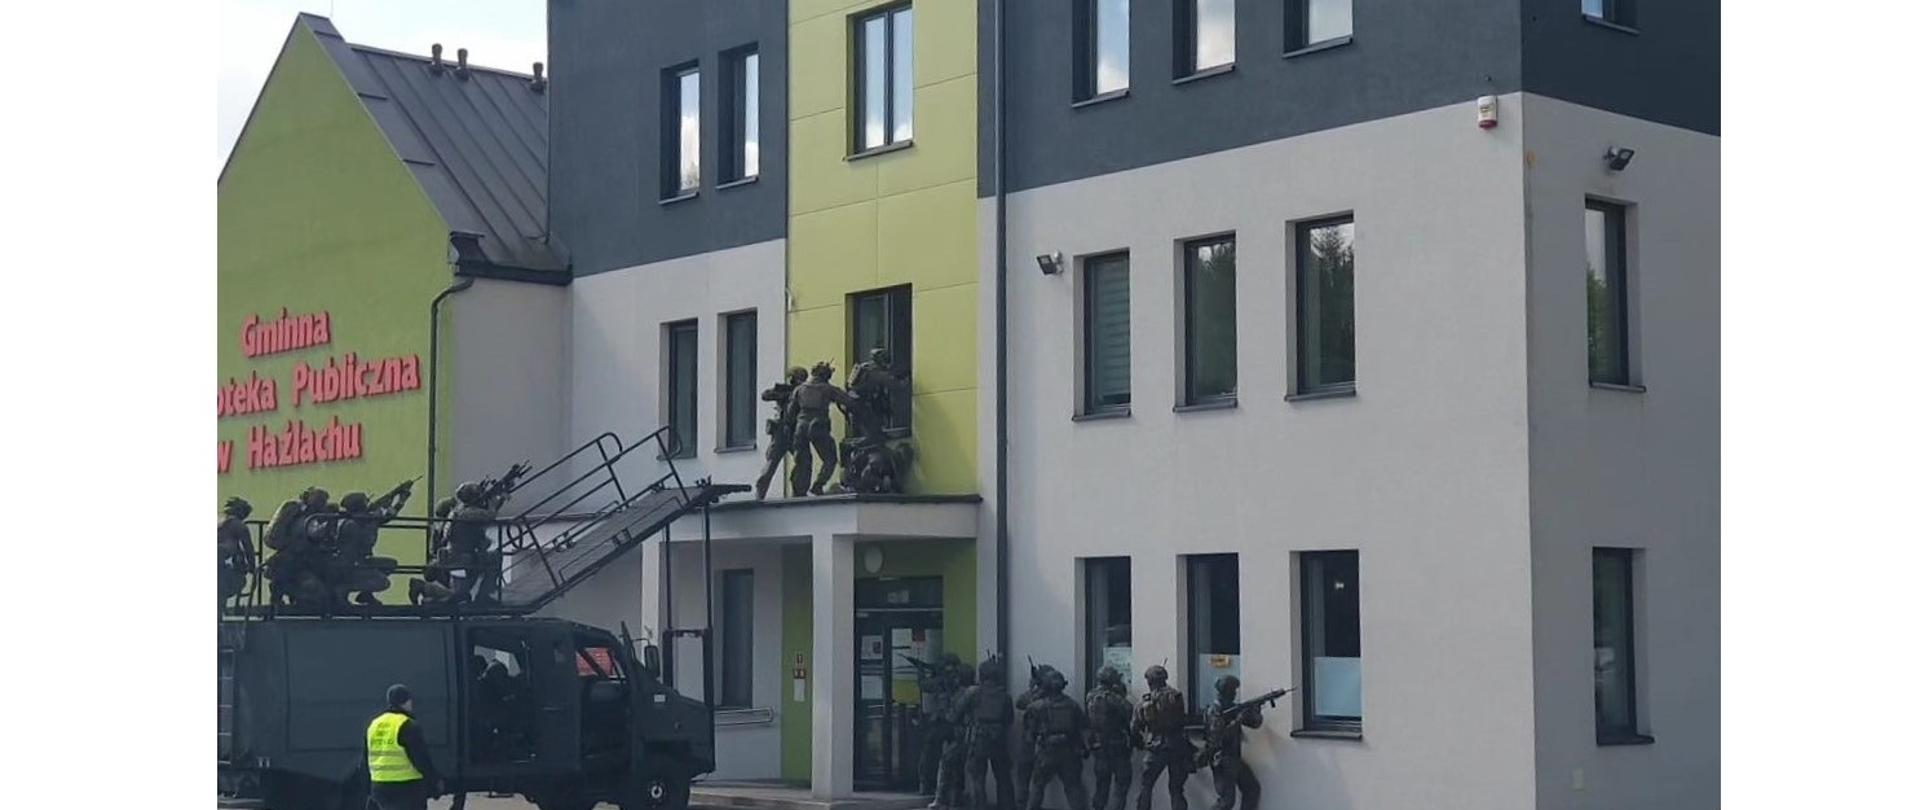 Wejście zespołu antyterrorystycznego na I piętro budynku GBP w Hażlachu. Przed budynkiem stoi specjalistyczny pojazd wojskowy z pomostem dla antyterrotystów. Uzbrojeni żołnierze wdzierają się do budynku przez okno. Druga grupa zajmuje pozycję przy ścianie budynku.